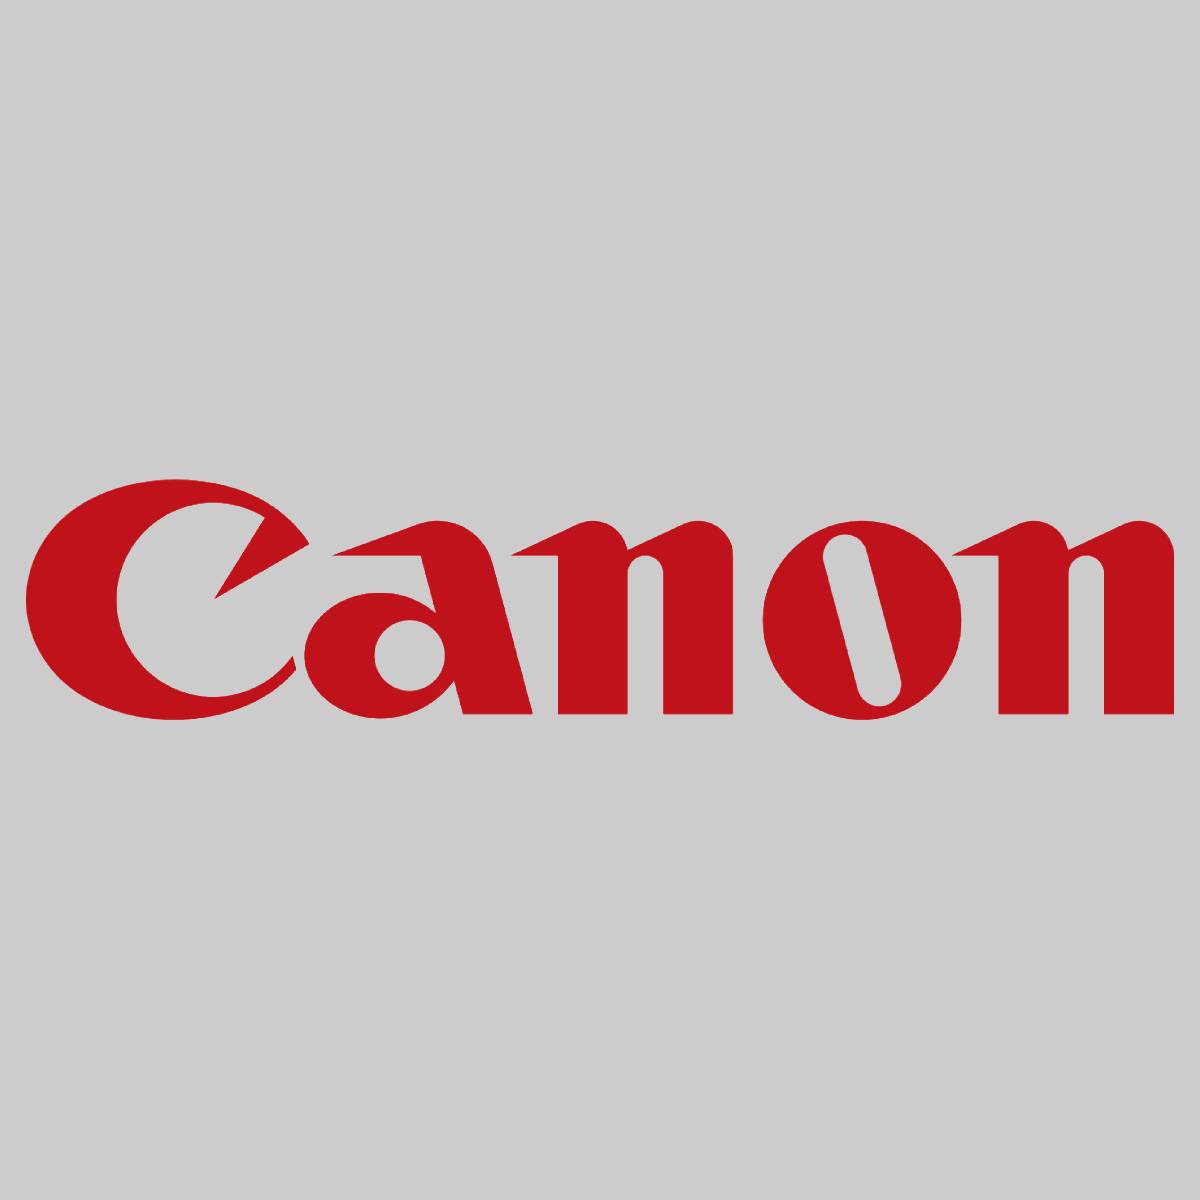 "Originální Canon FIXAČNÍ SESTAVA 110V FM1-D741-02U pro imageRUNNER ADV C5250 5255